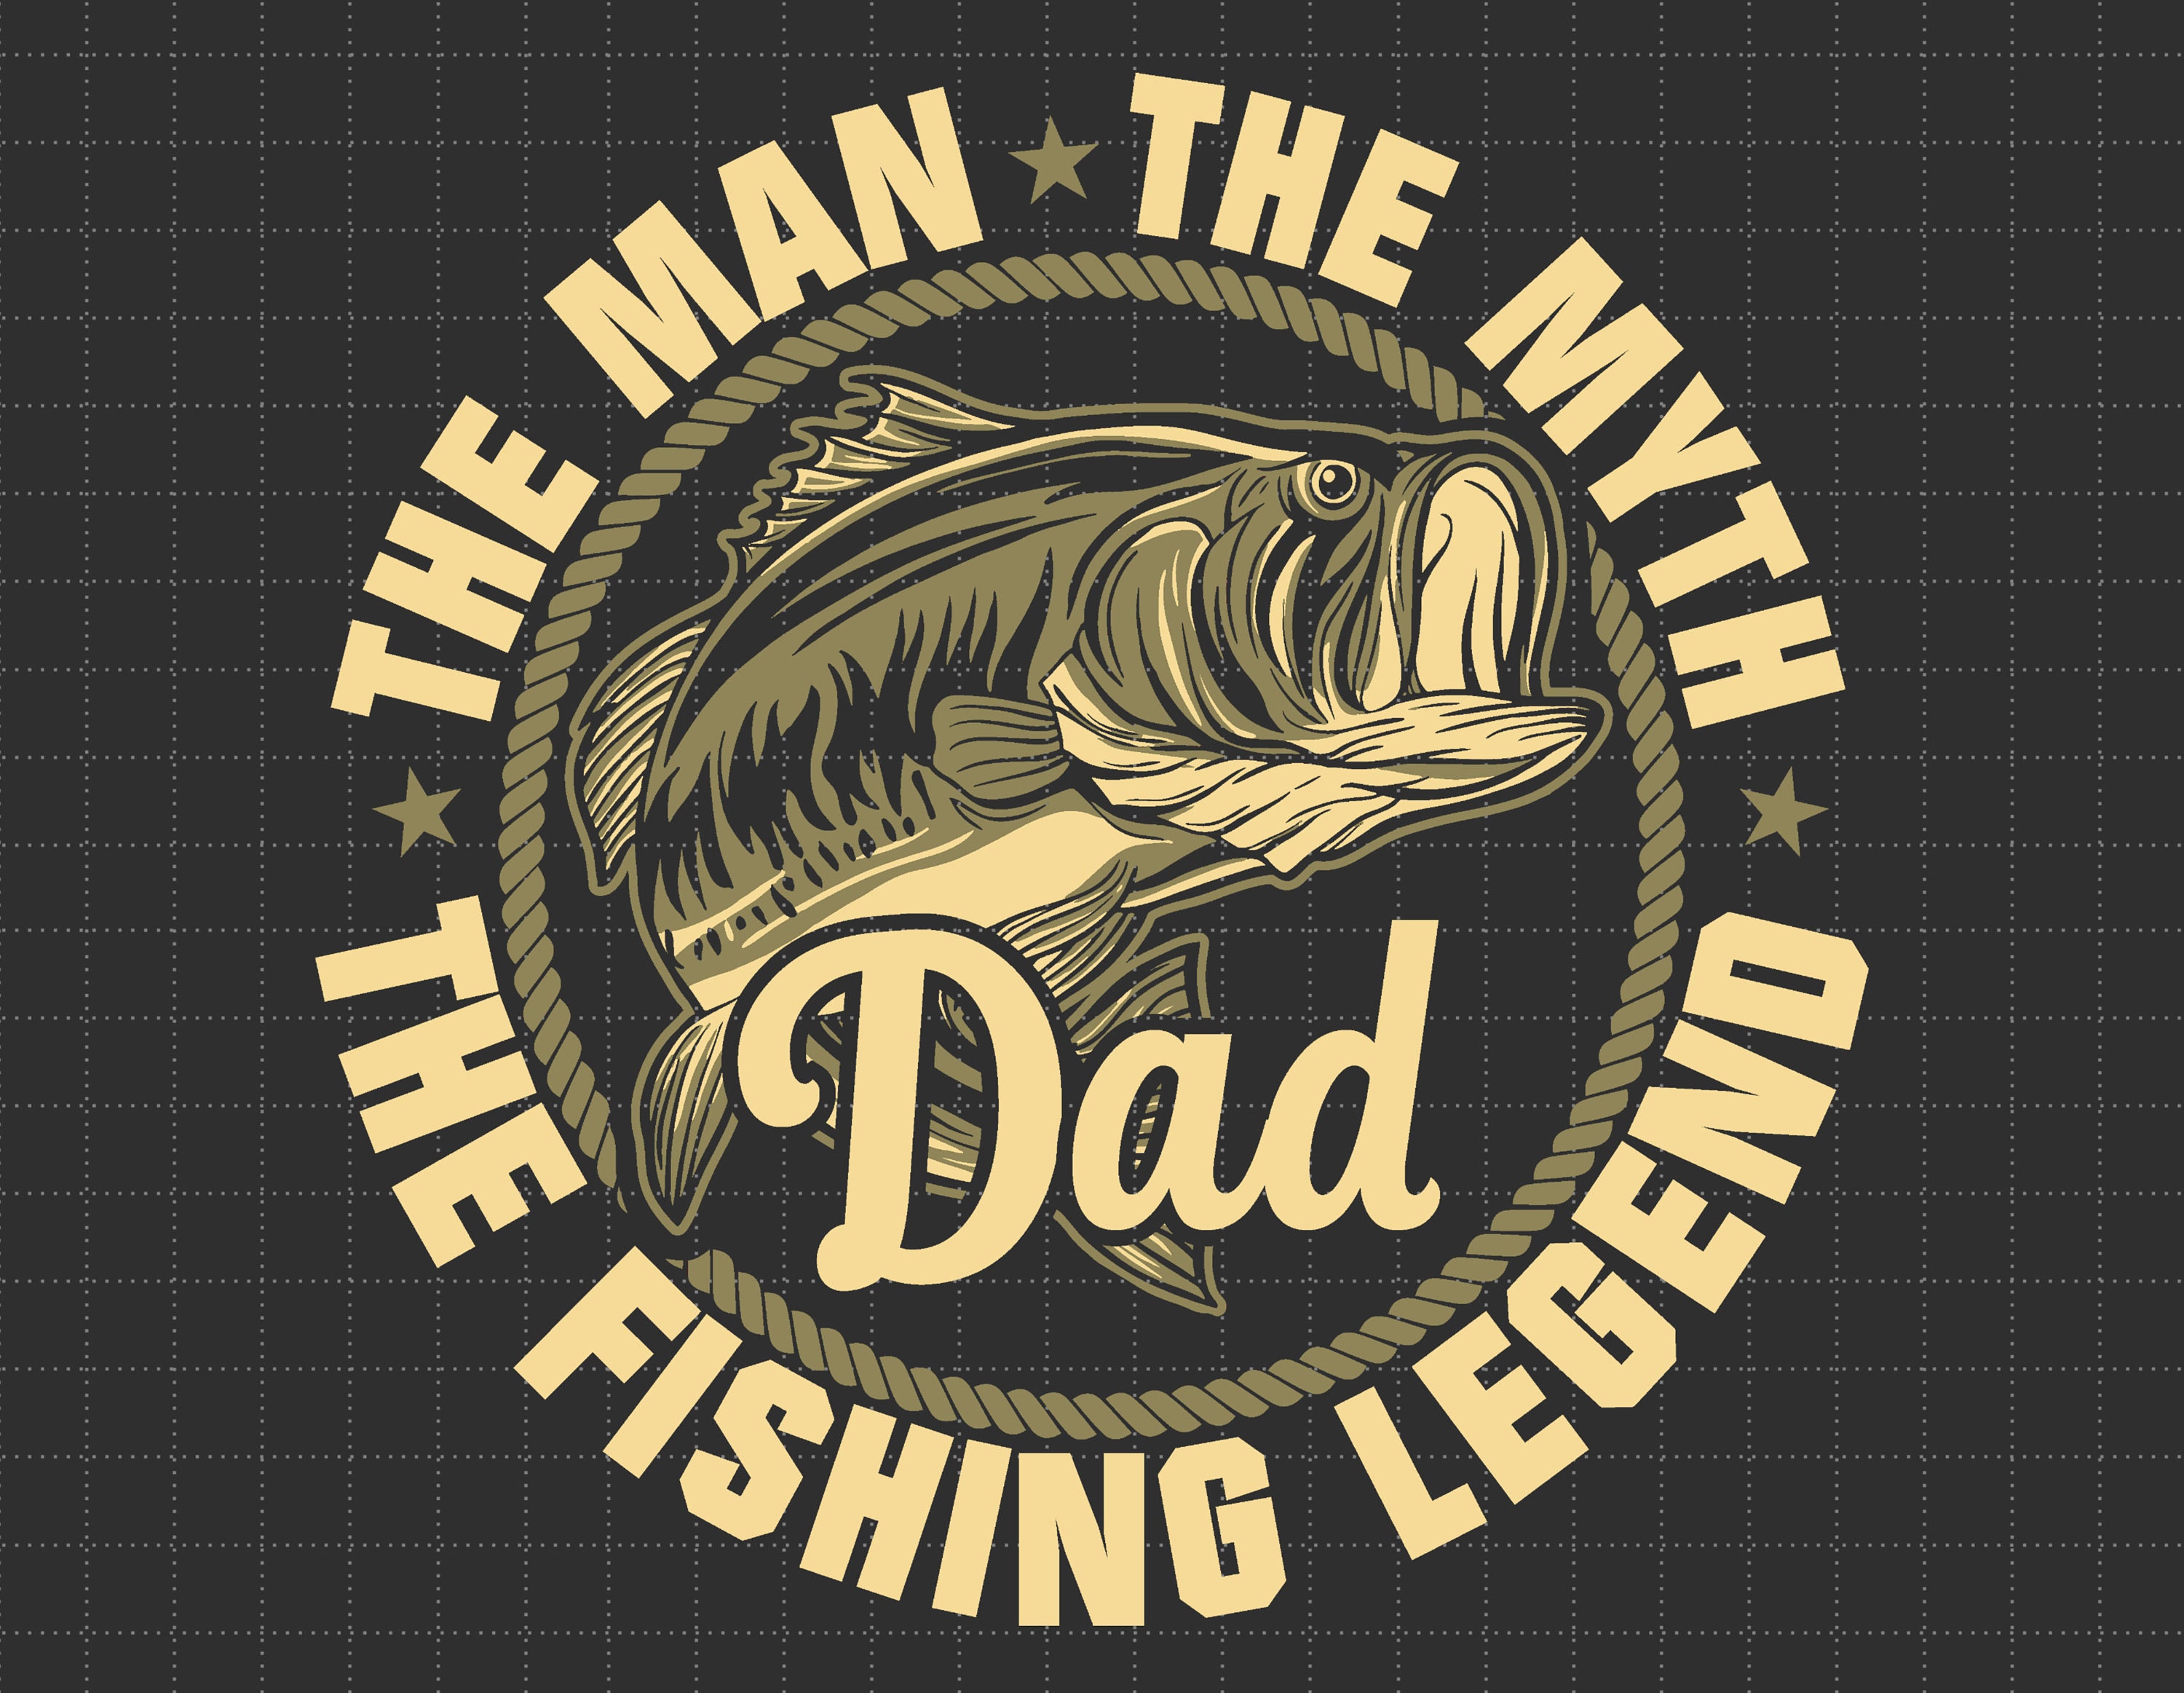 Dad Man Myth Legend 